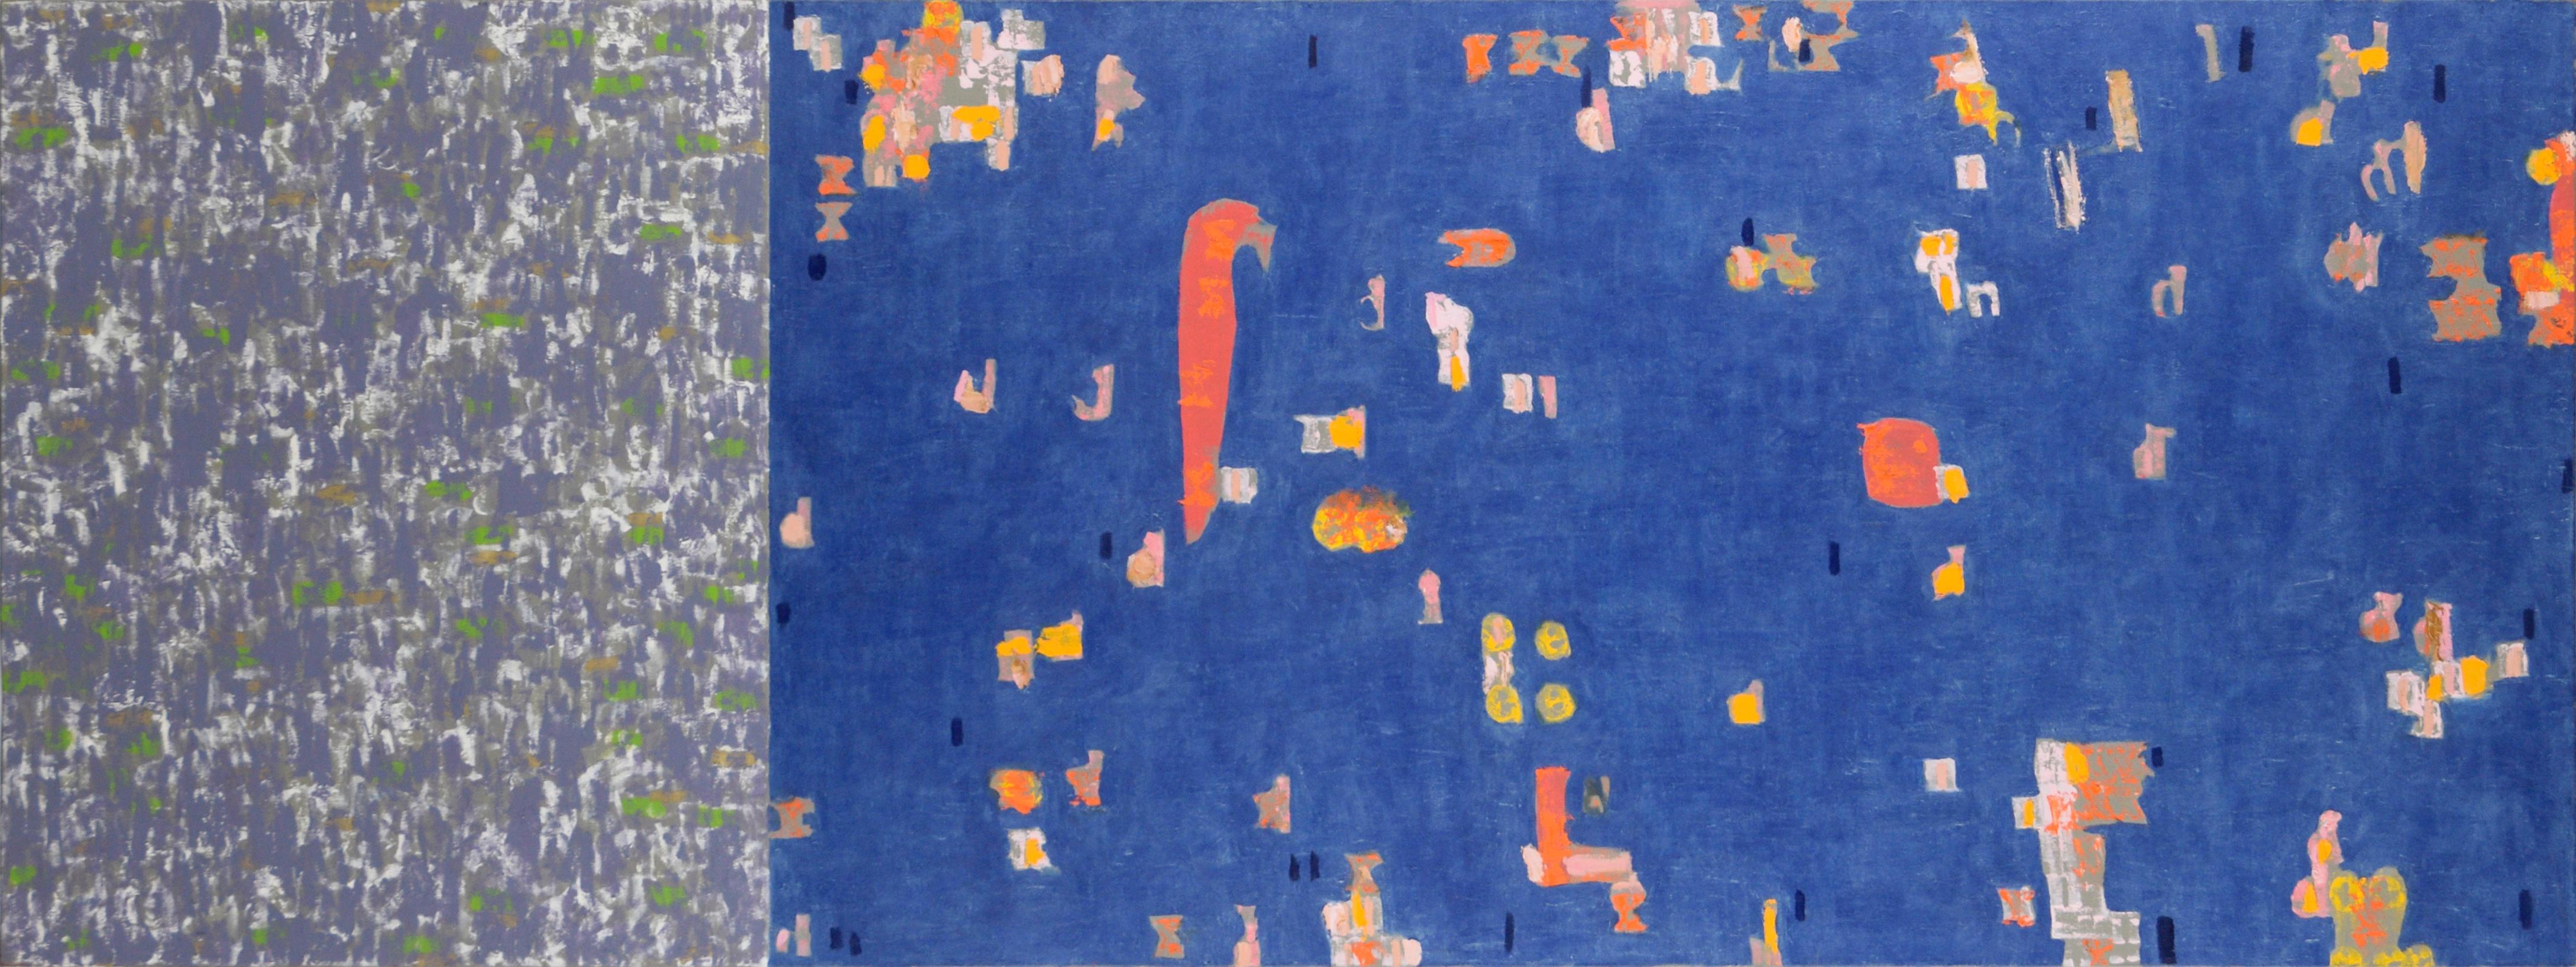 Abstract Painting Michael Pauker  - « Pre-Flood », abstrait contemporain à grande échelle en bleu